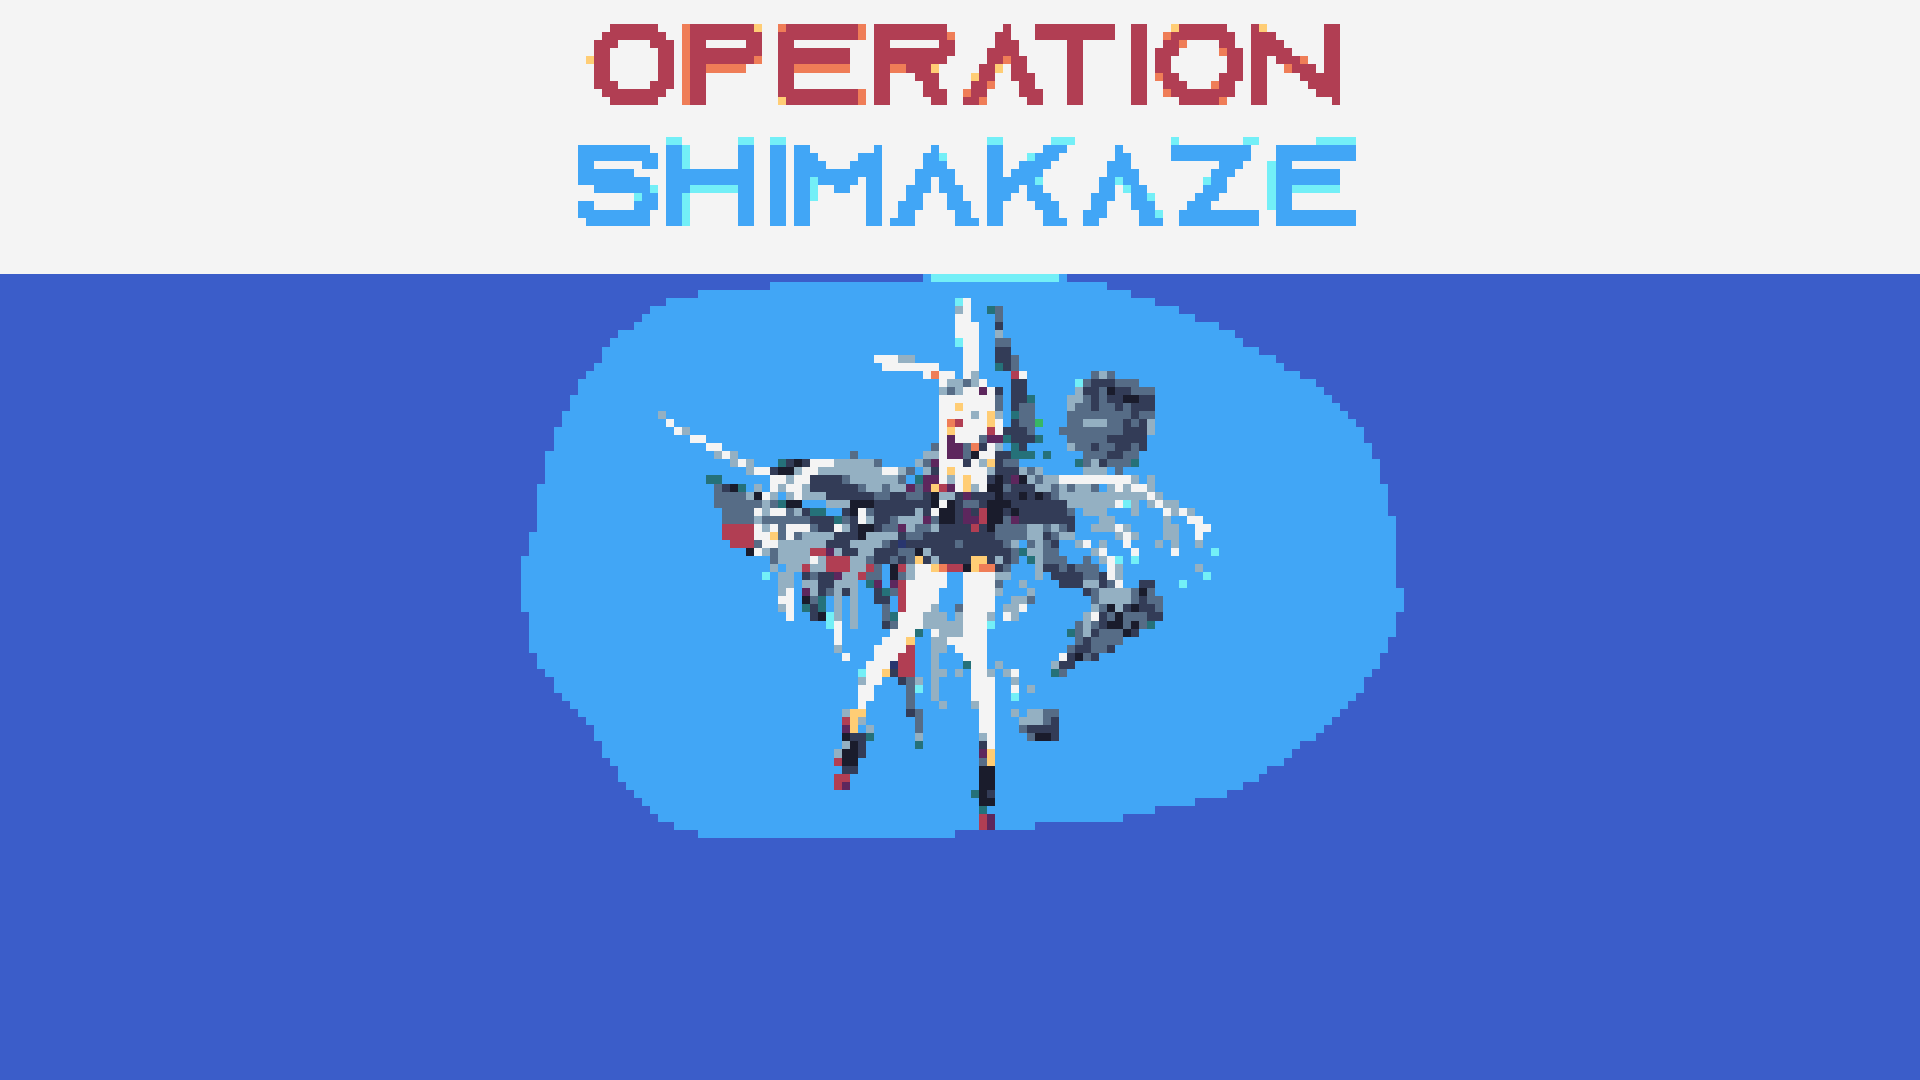 Operation: Shimakaze